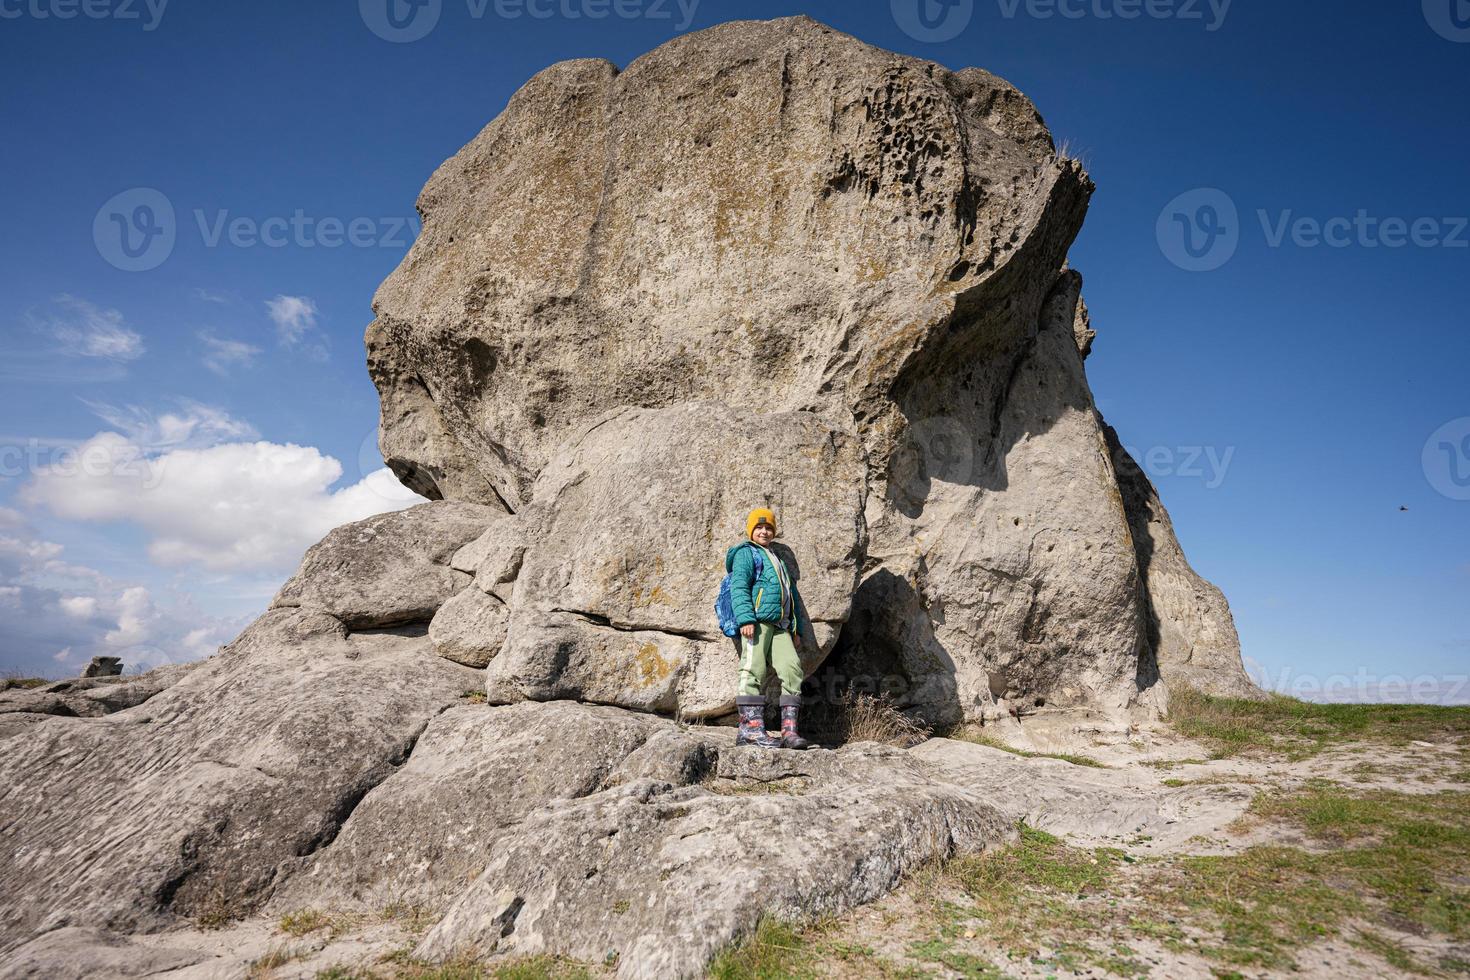 Natur erkunden. Junge trägt Rucksack beim Wandern in der Nähe von großen Steinen im Hügel. pidkamin, ukraine. foto